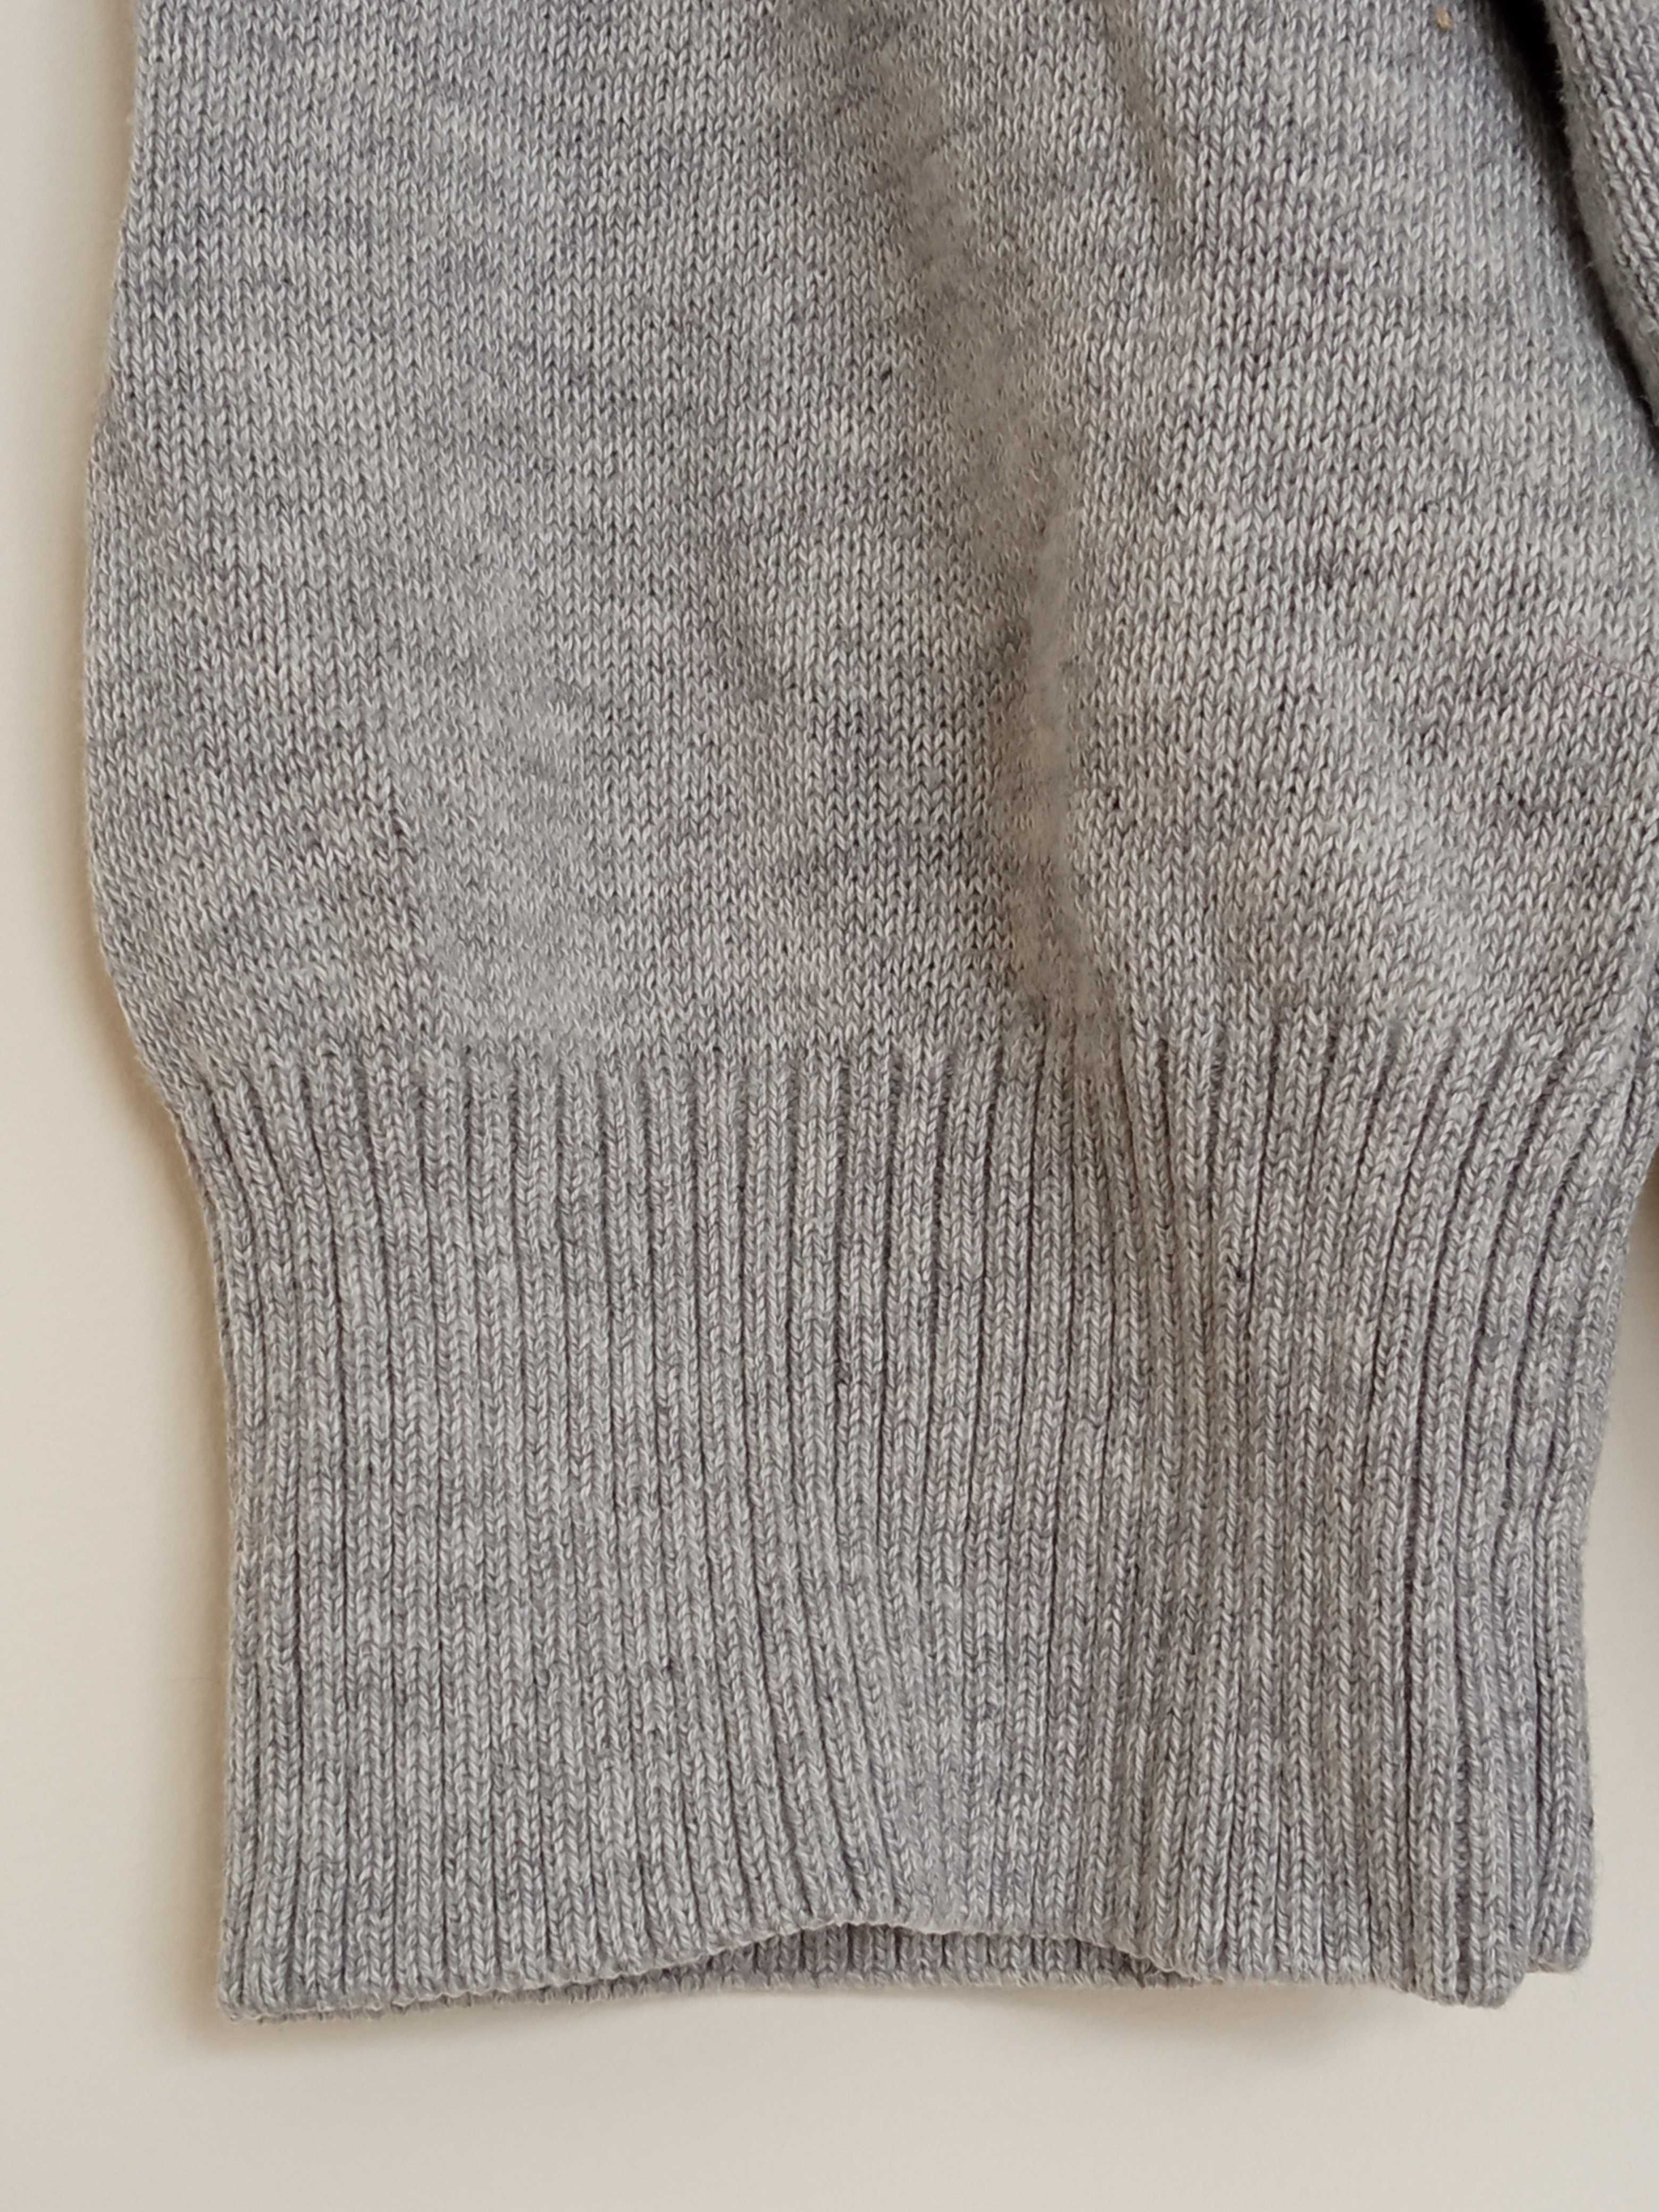 Sweter swterek damski rękaw 1/2 szary w romby serduszka George 42 M L